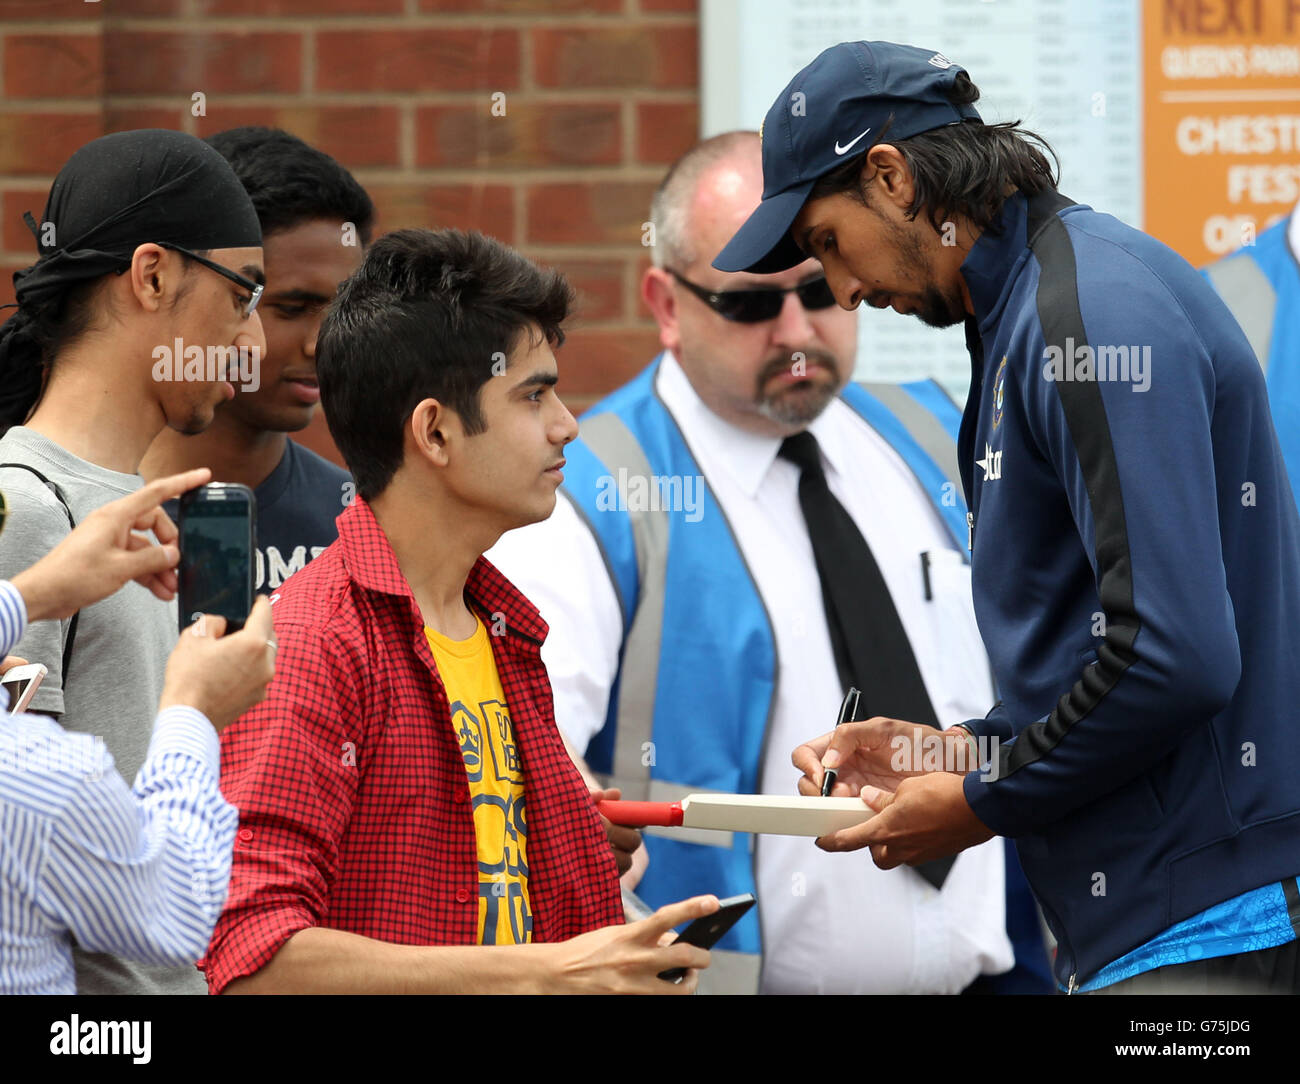 Ishant Sharma des Indiens signe des autographes pour les fans pendant le deuxième jour de l'Internationa Warm up match au 3aaa County Ground, Derby. Banque D'Images